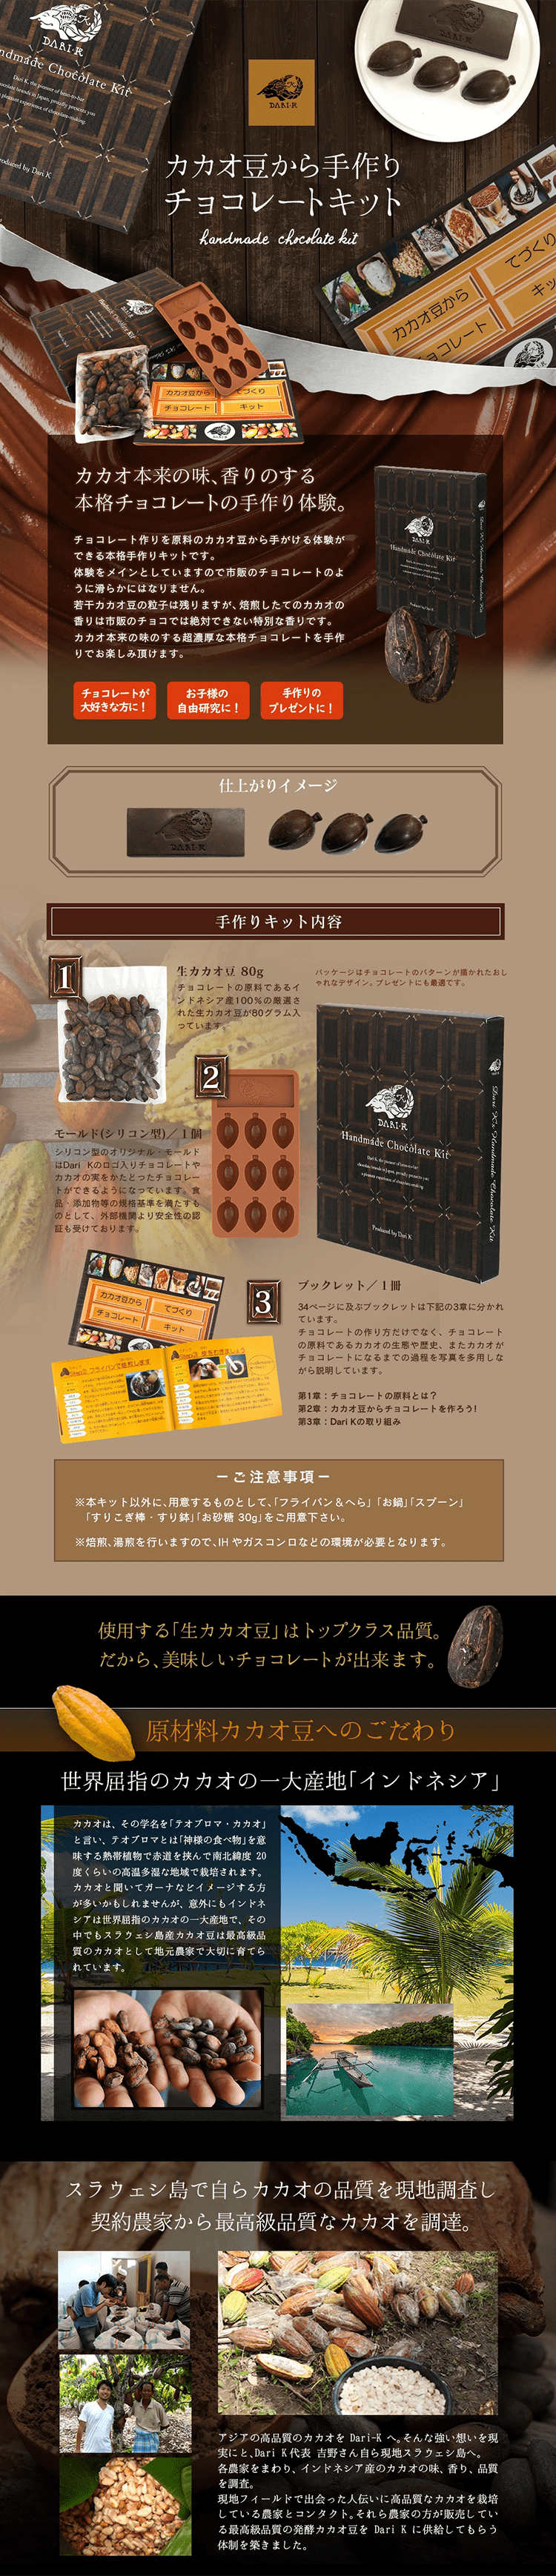 カカオ豆から手作りチョコレートキット_pc_1